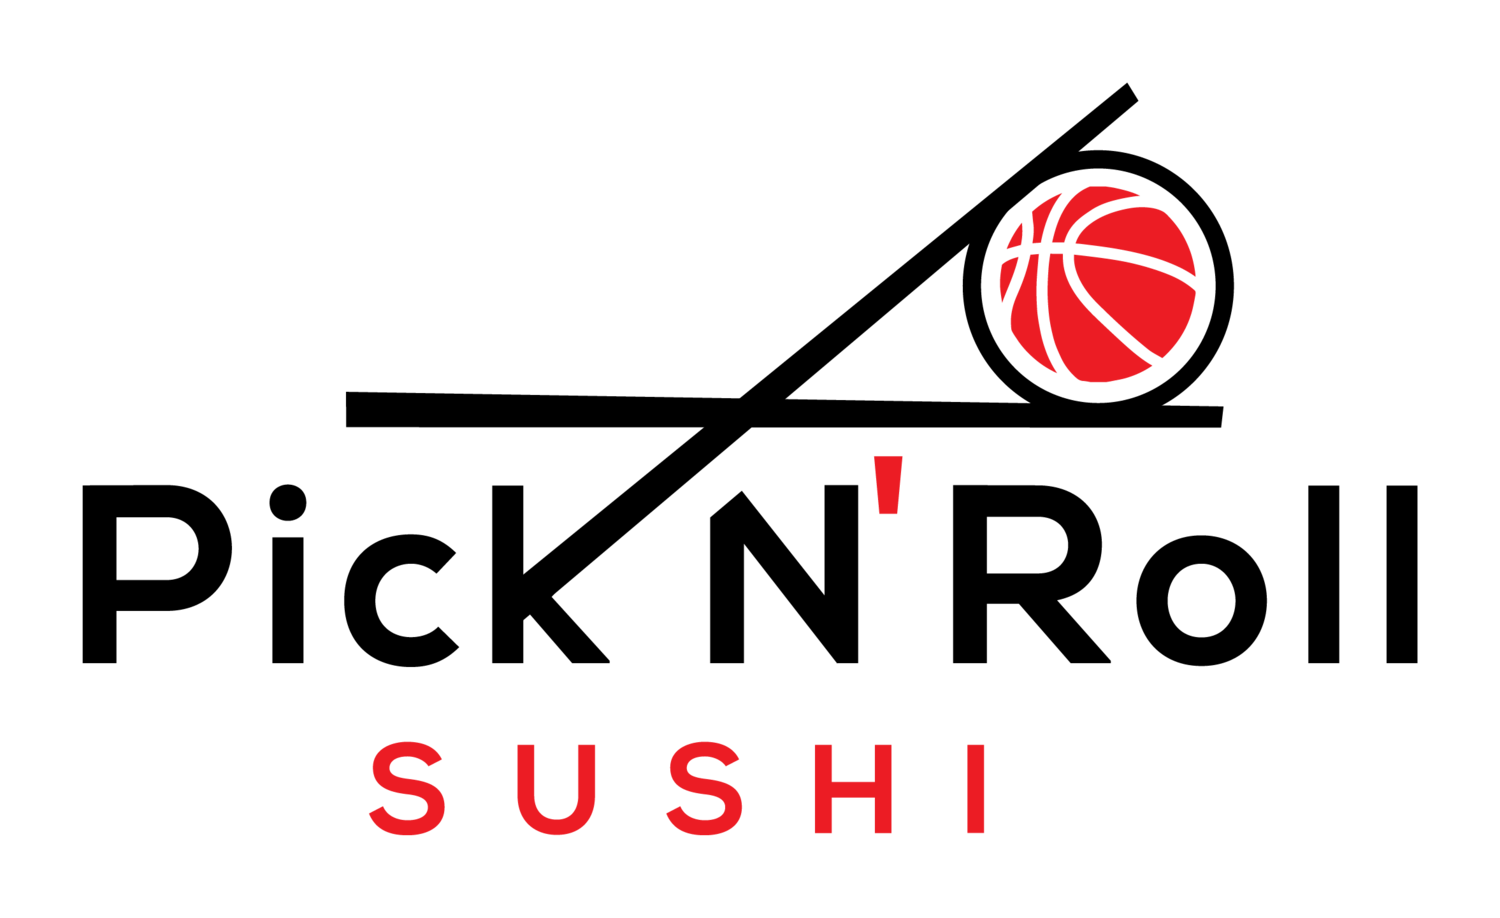 Pick n' roll sushi